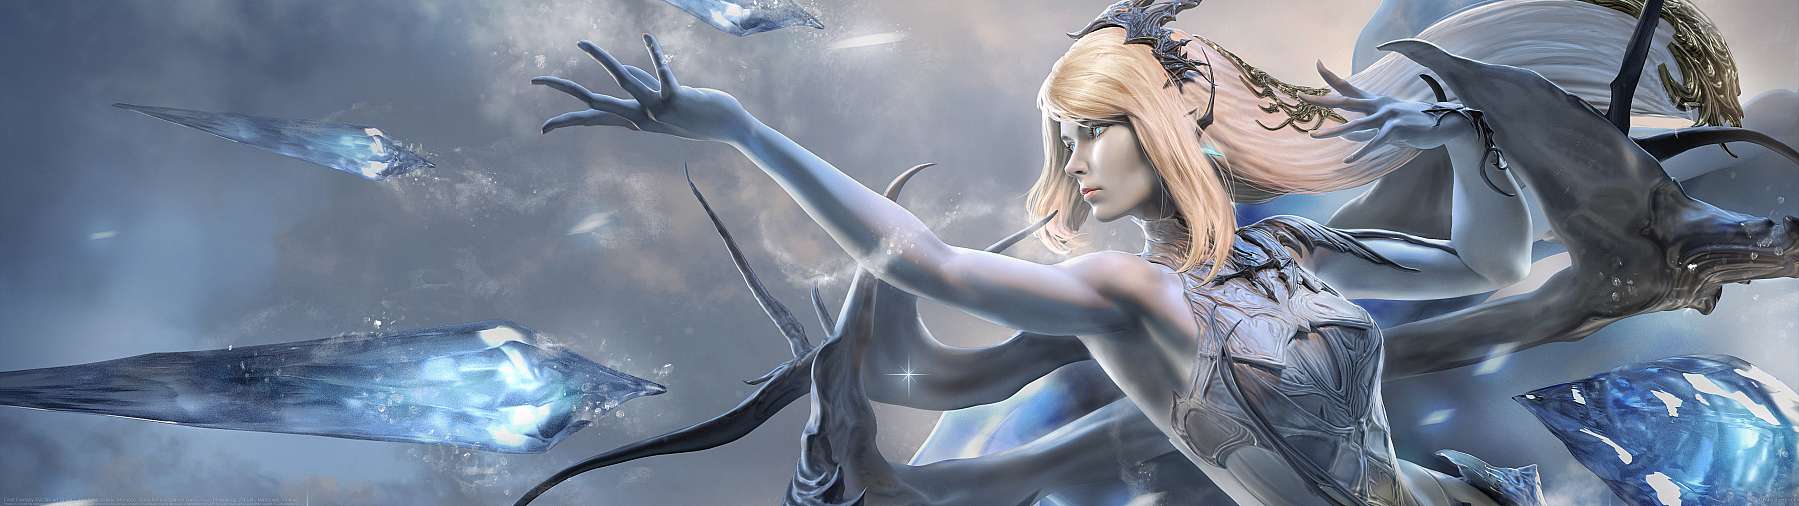 Final Fantasy XVI fan art Shiva ultrawide achtergrond